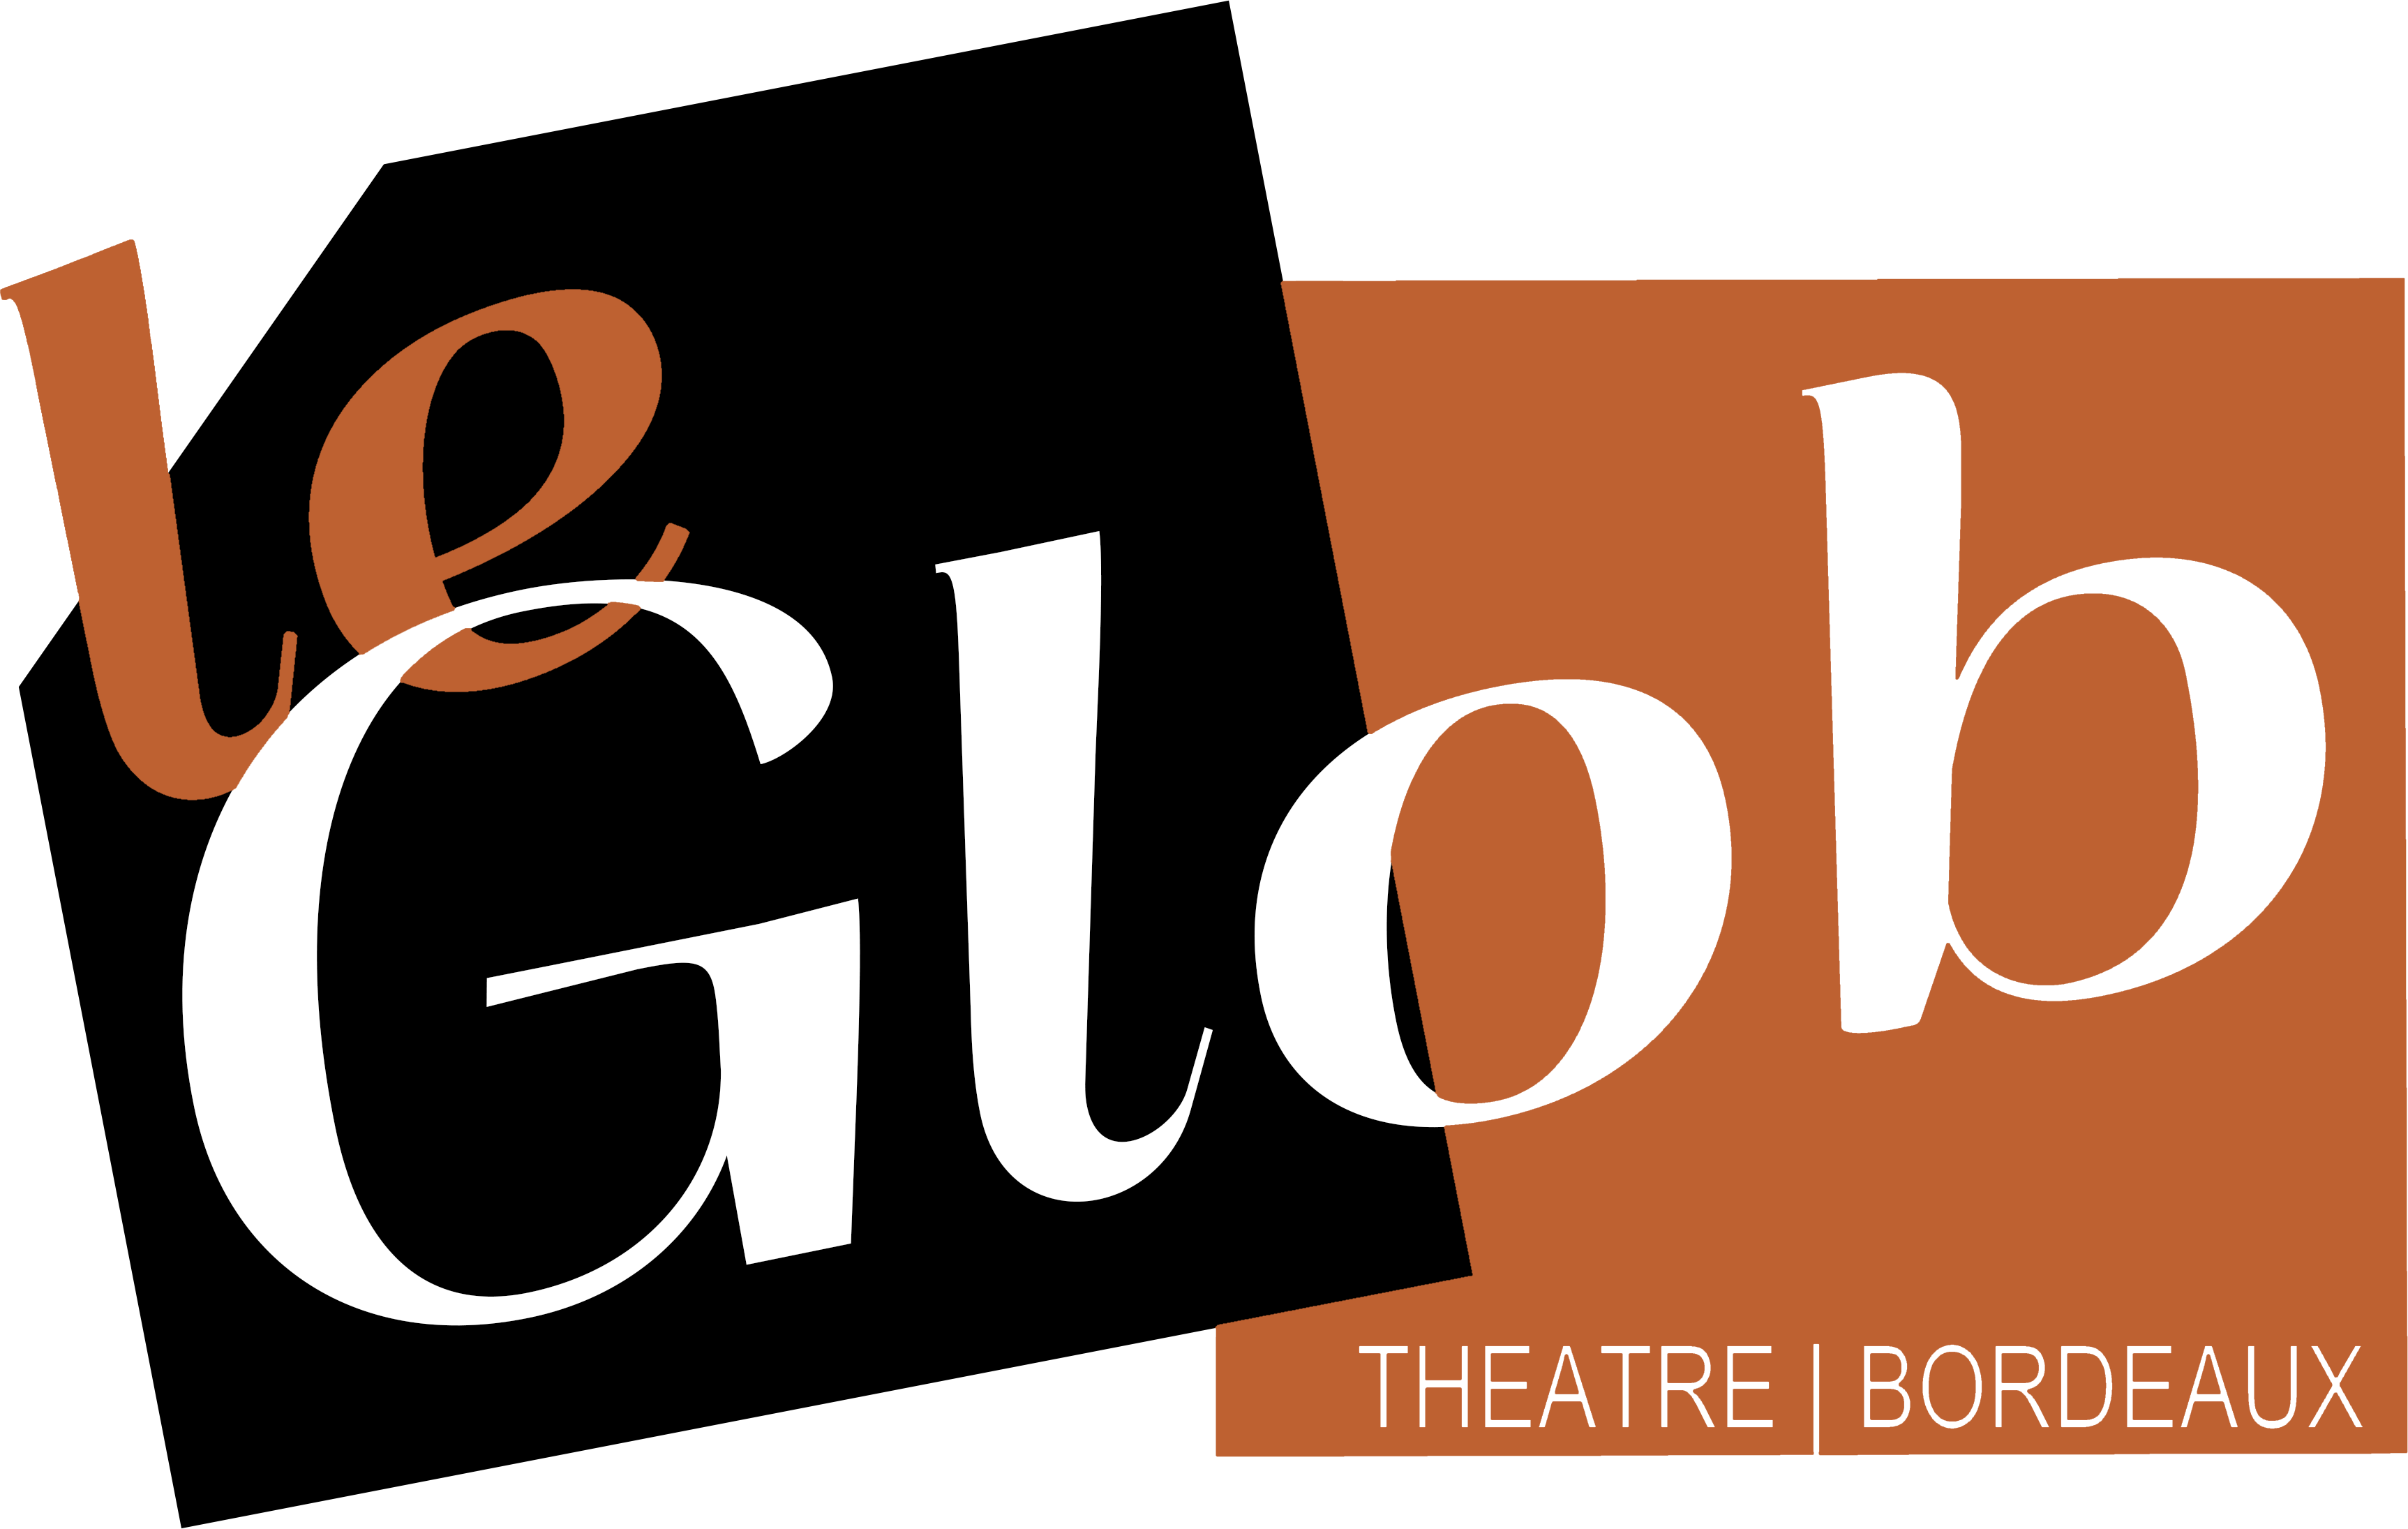 Glob theatre